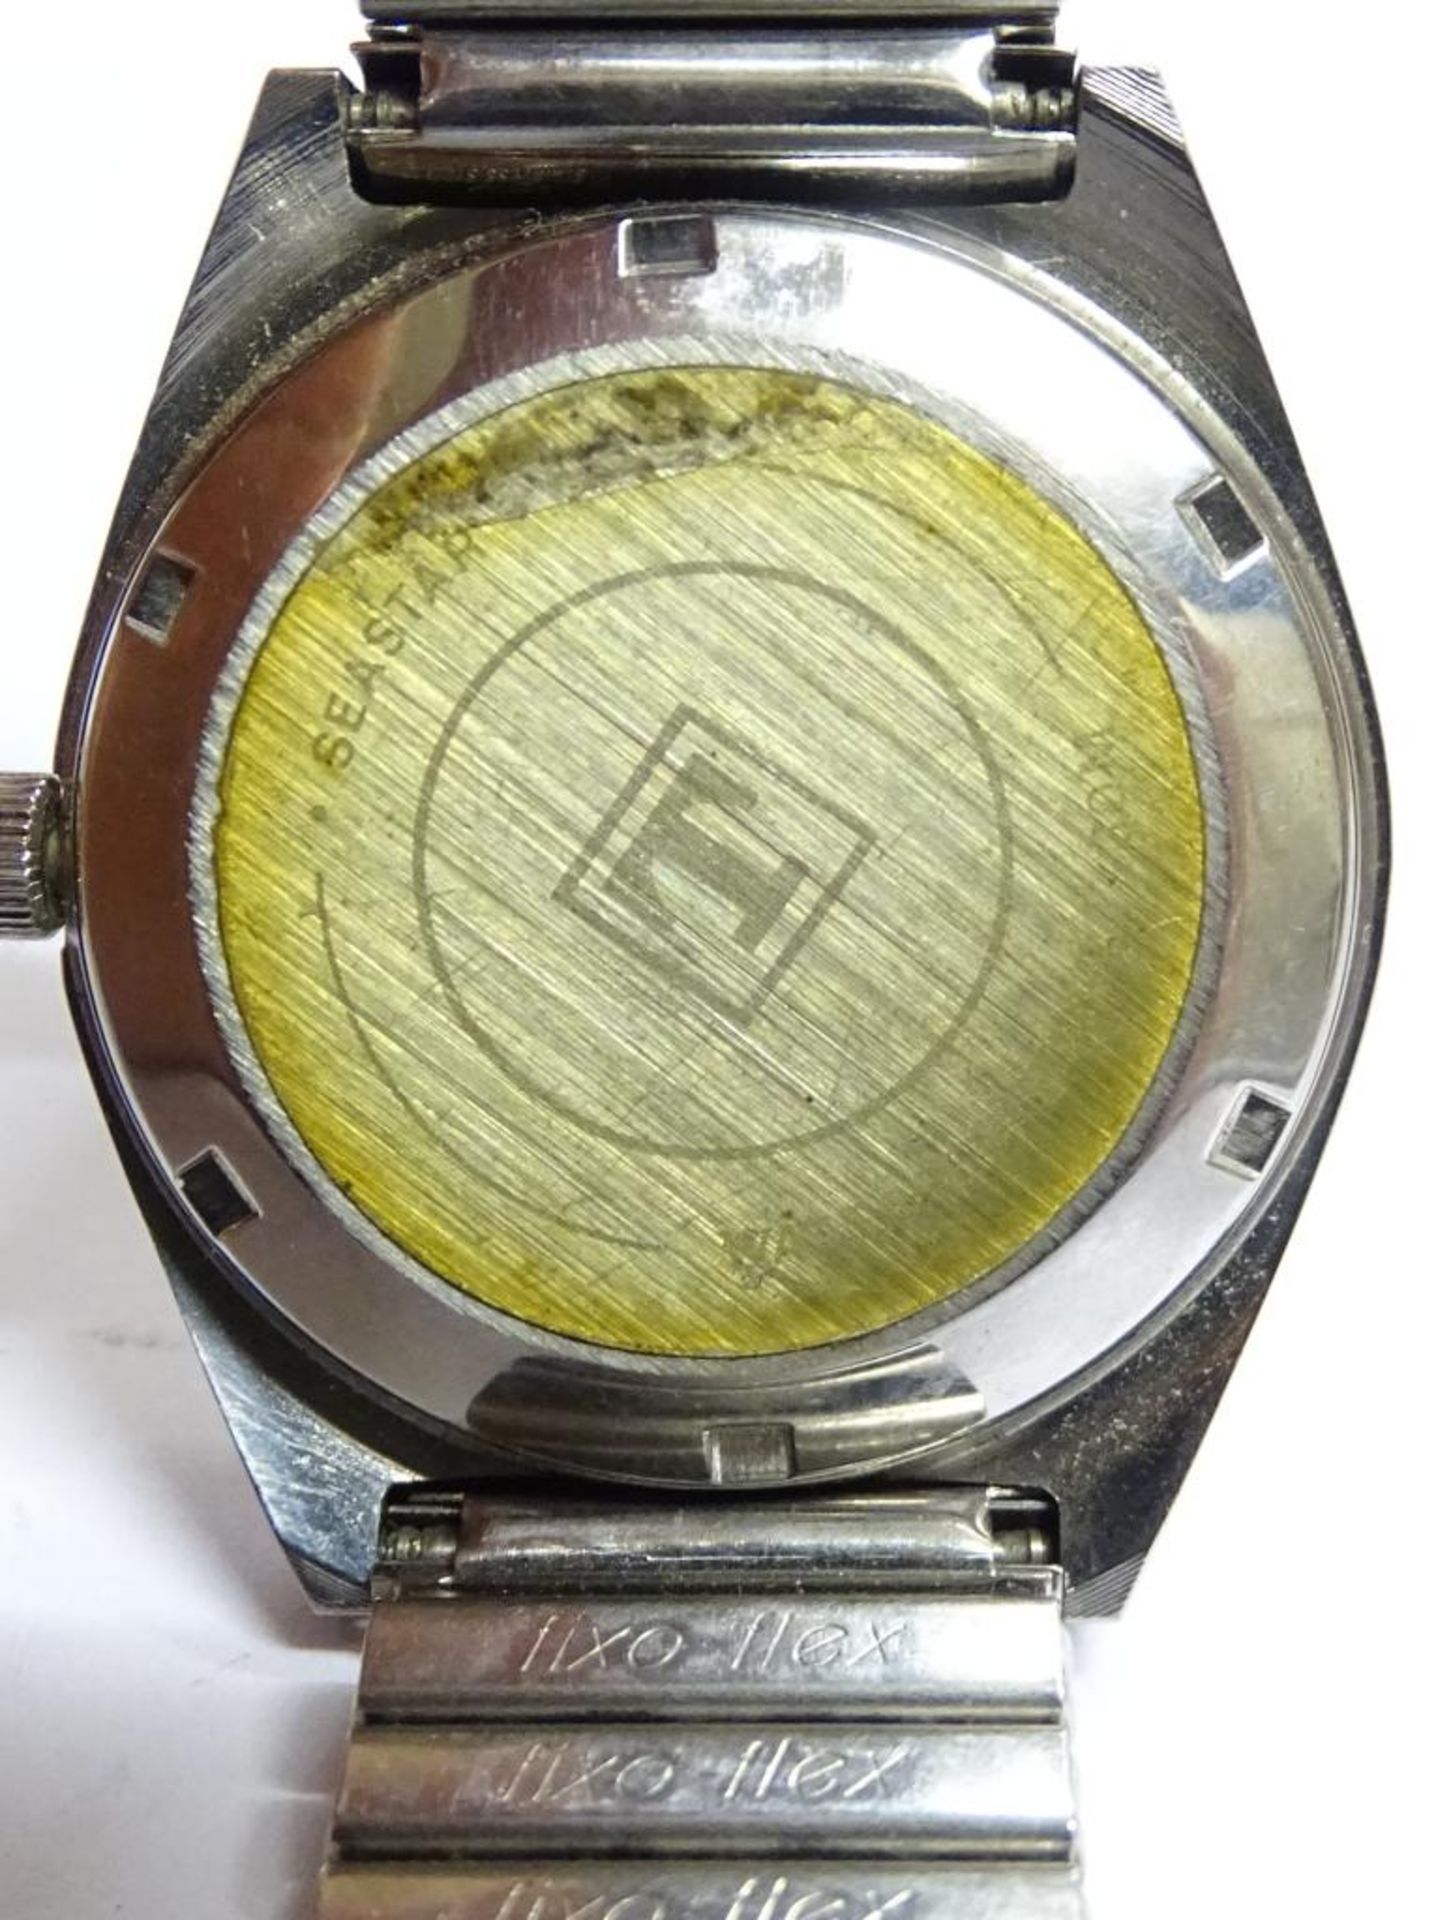 Armbanduhr "Tissot-Seastar",automatik,Werk läuft,Edelstahl,Datumsanzeige,Band beschädi - Bild 3 aus 3